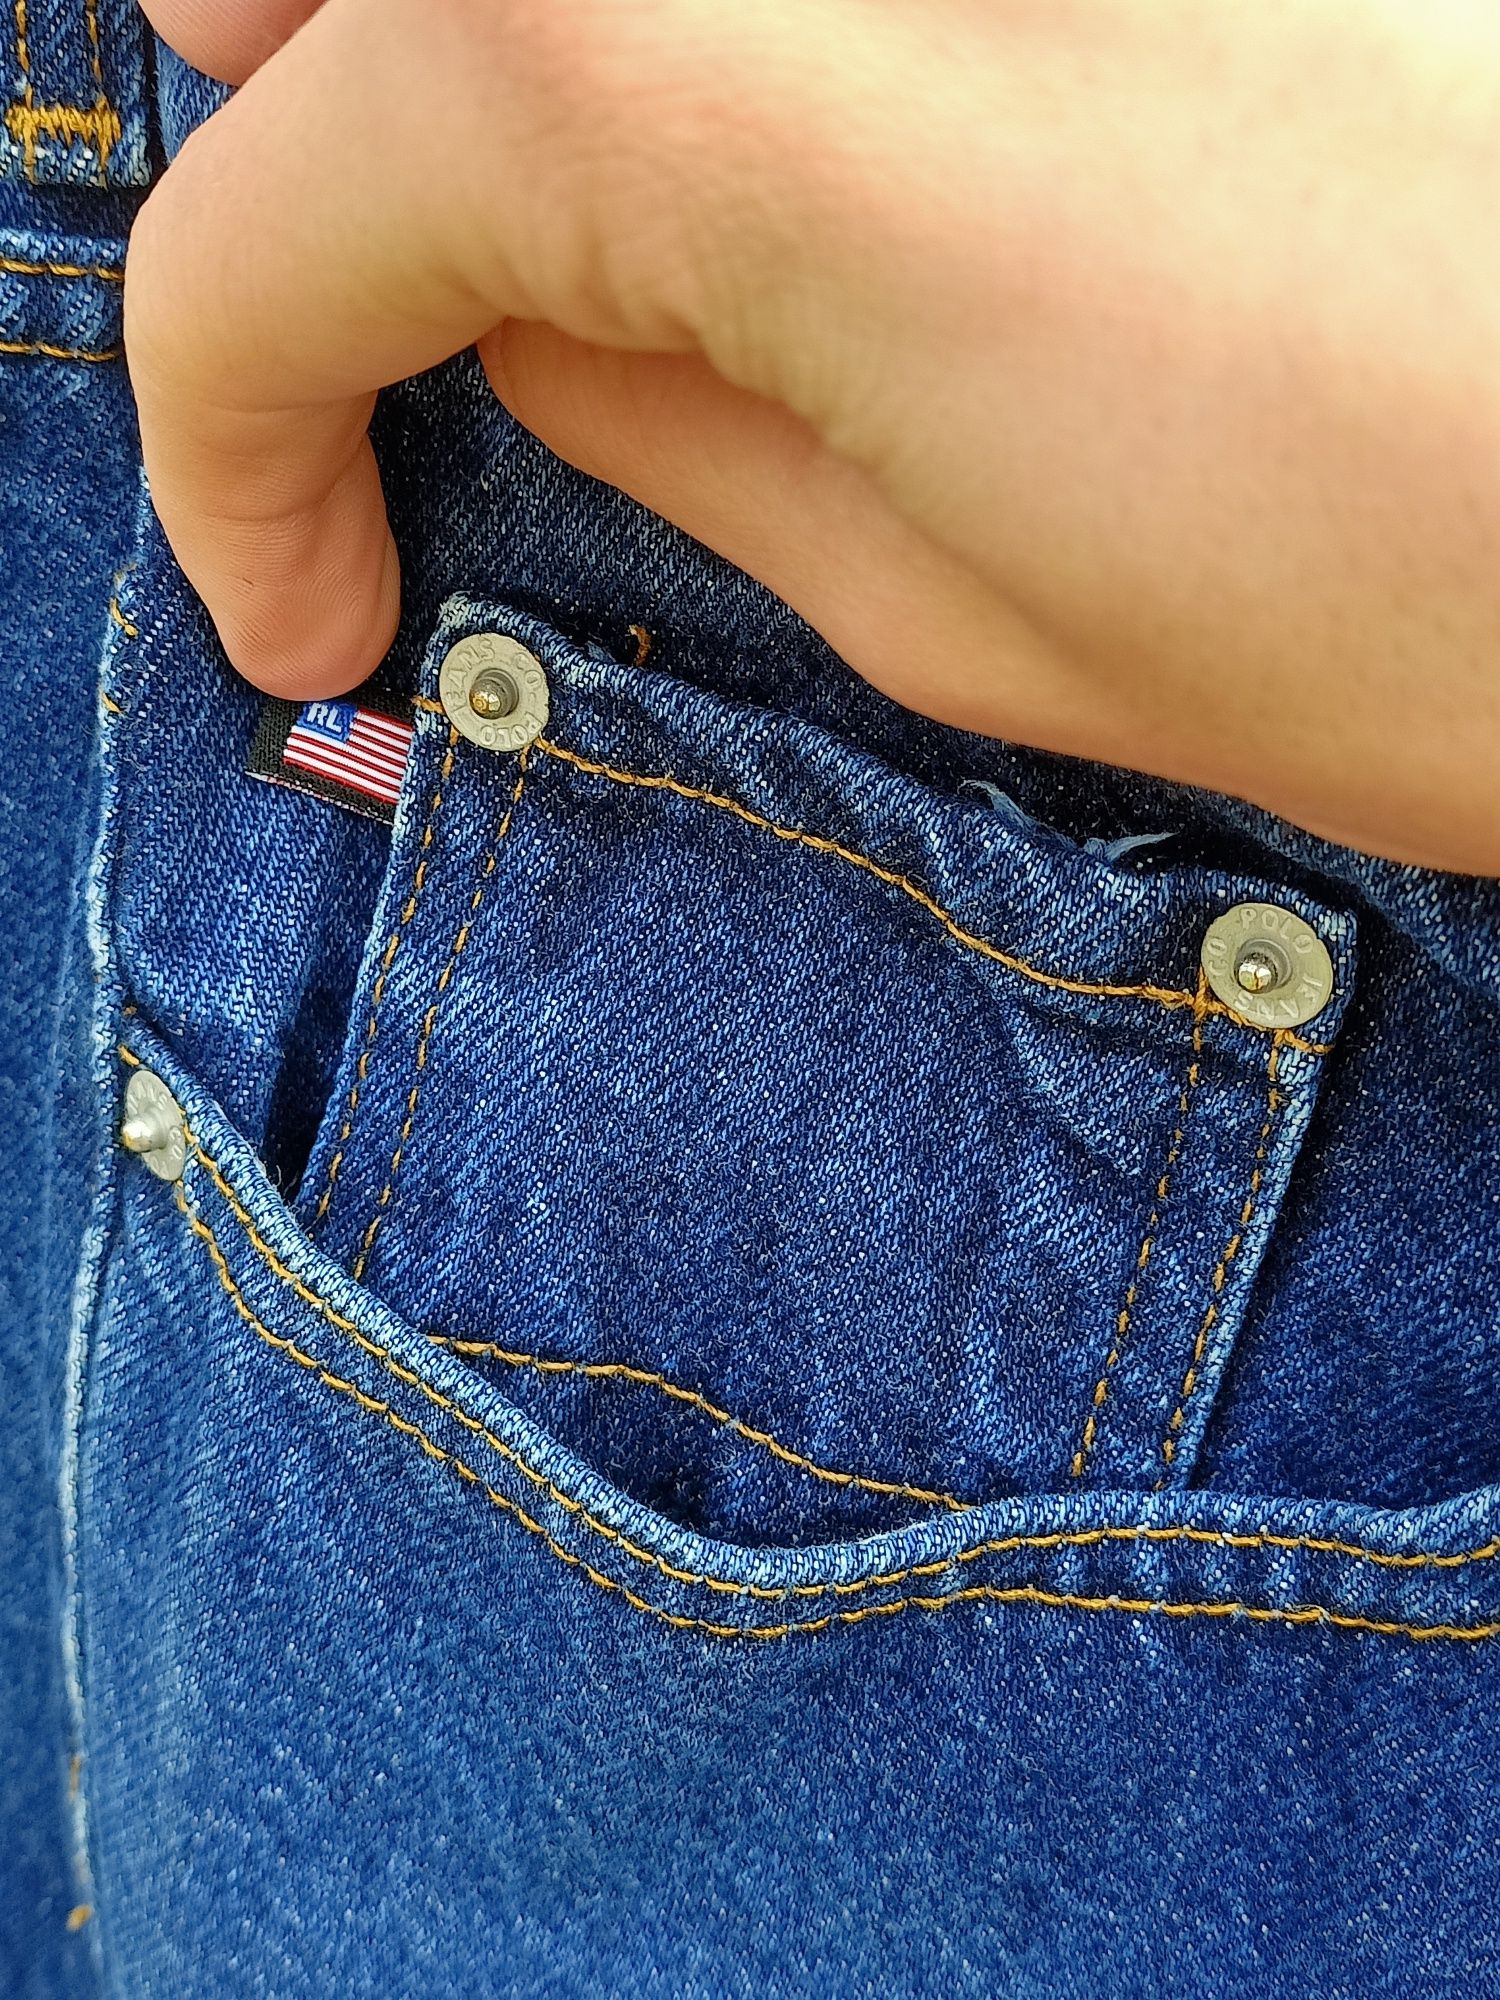 Ralph Lauren jeans USA